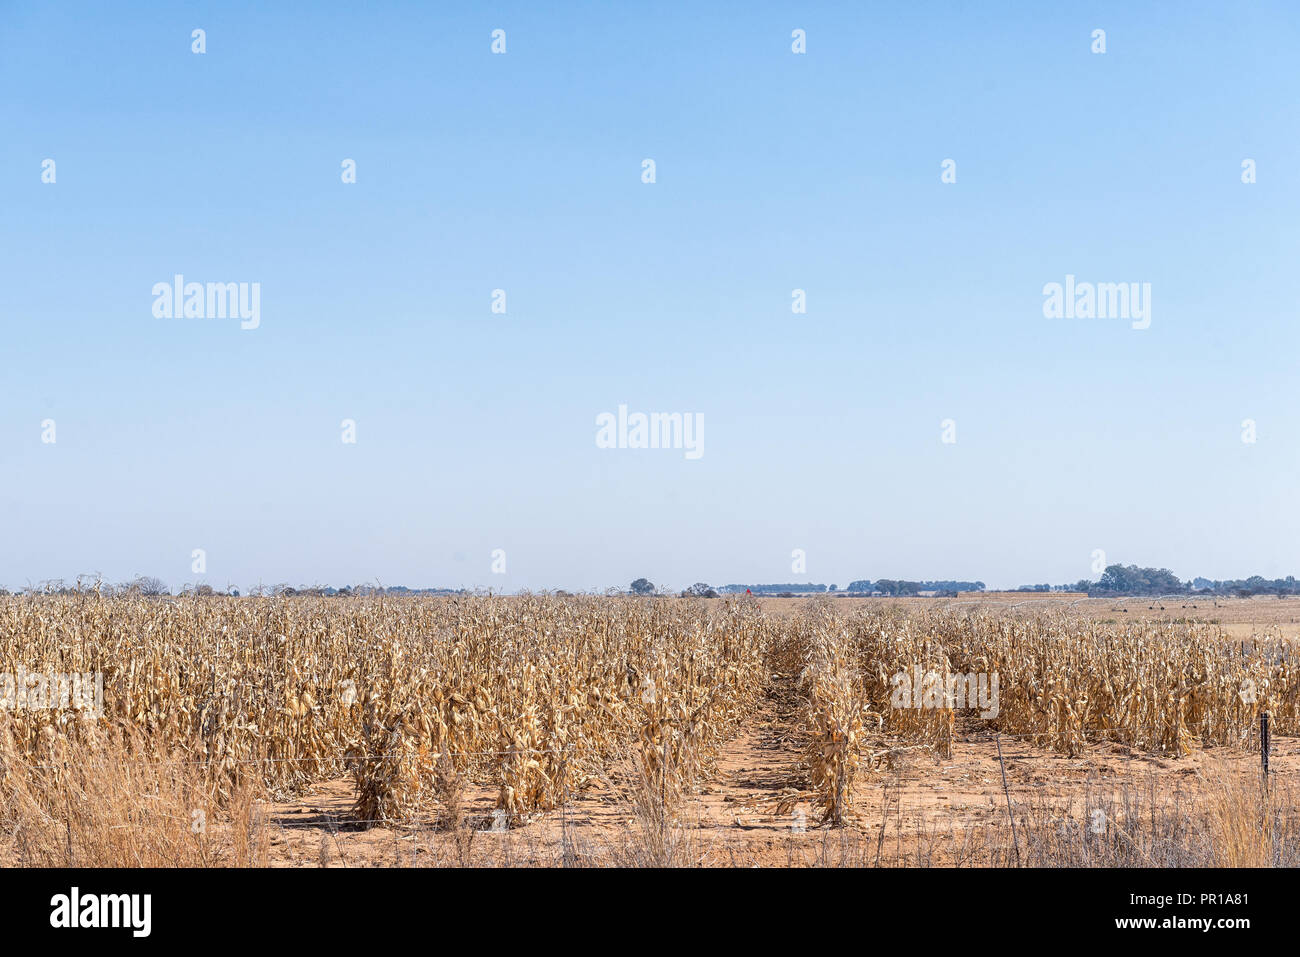 Los callos campos listos para ser cosechado cerca Koppies, una ciudad en la provincia el Estado Libre de Sudáfrica Foto de stock